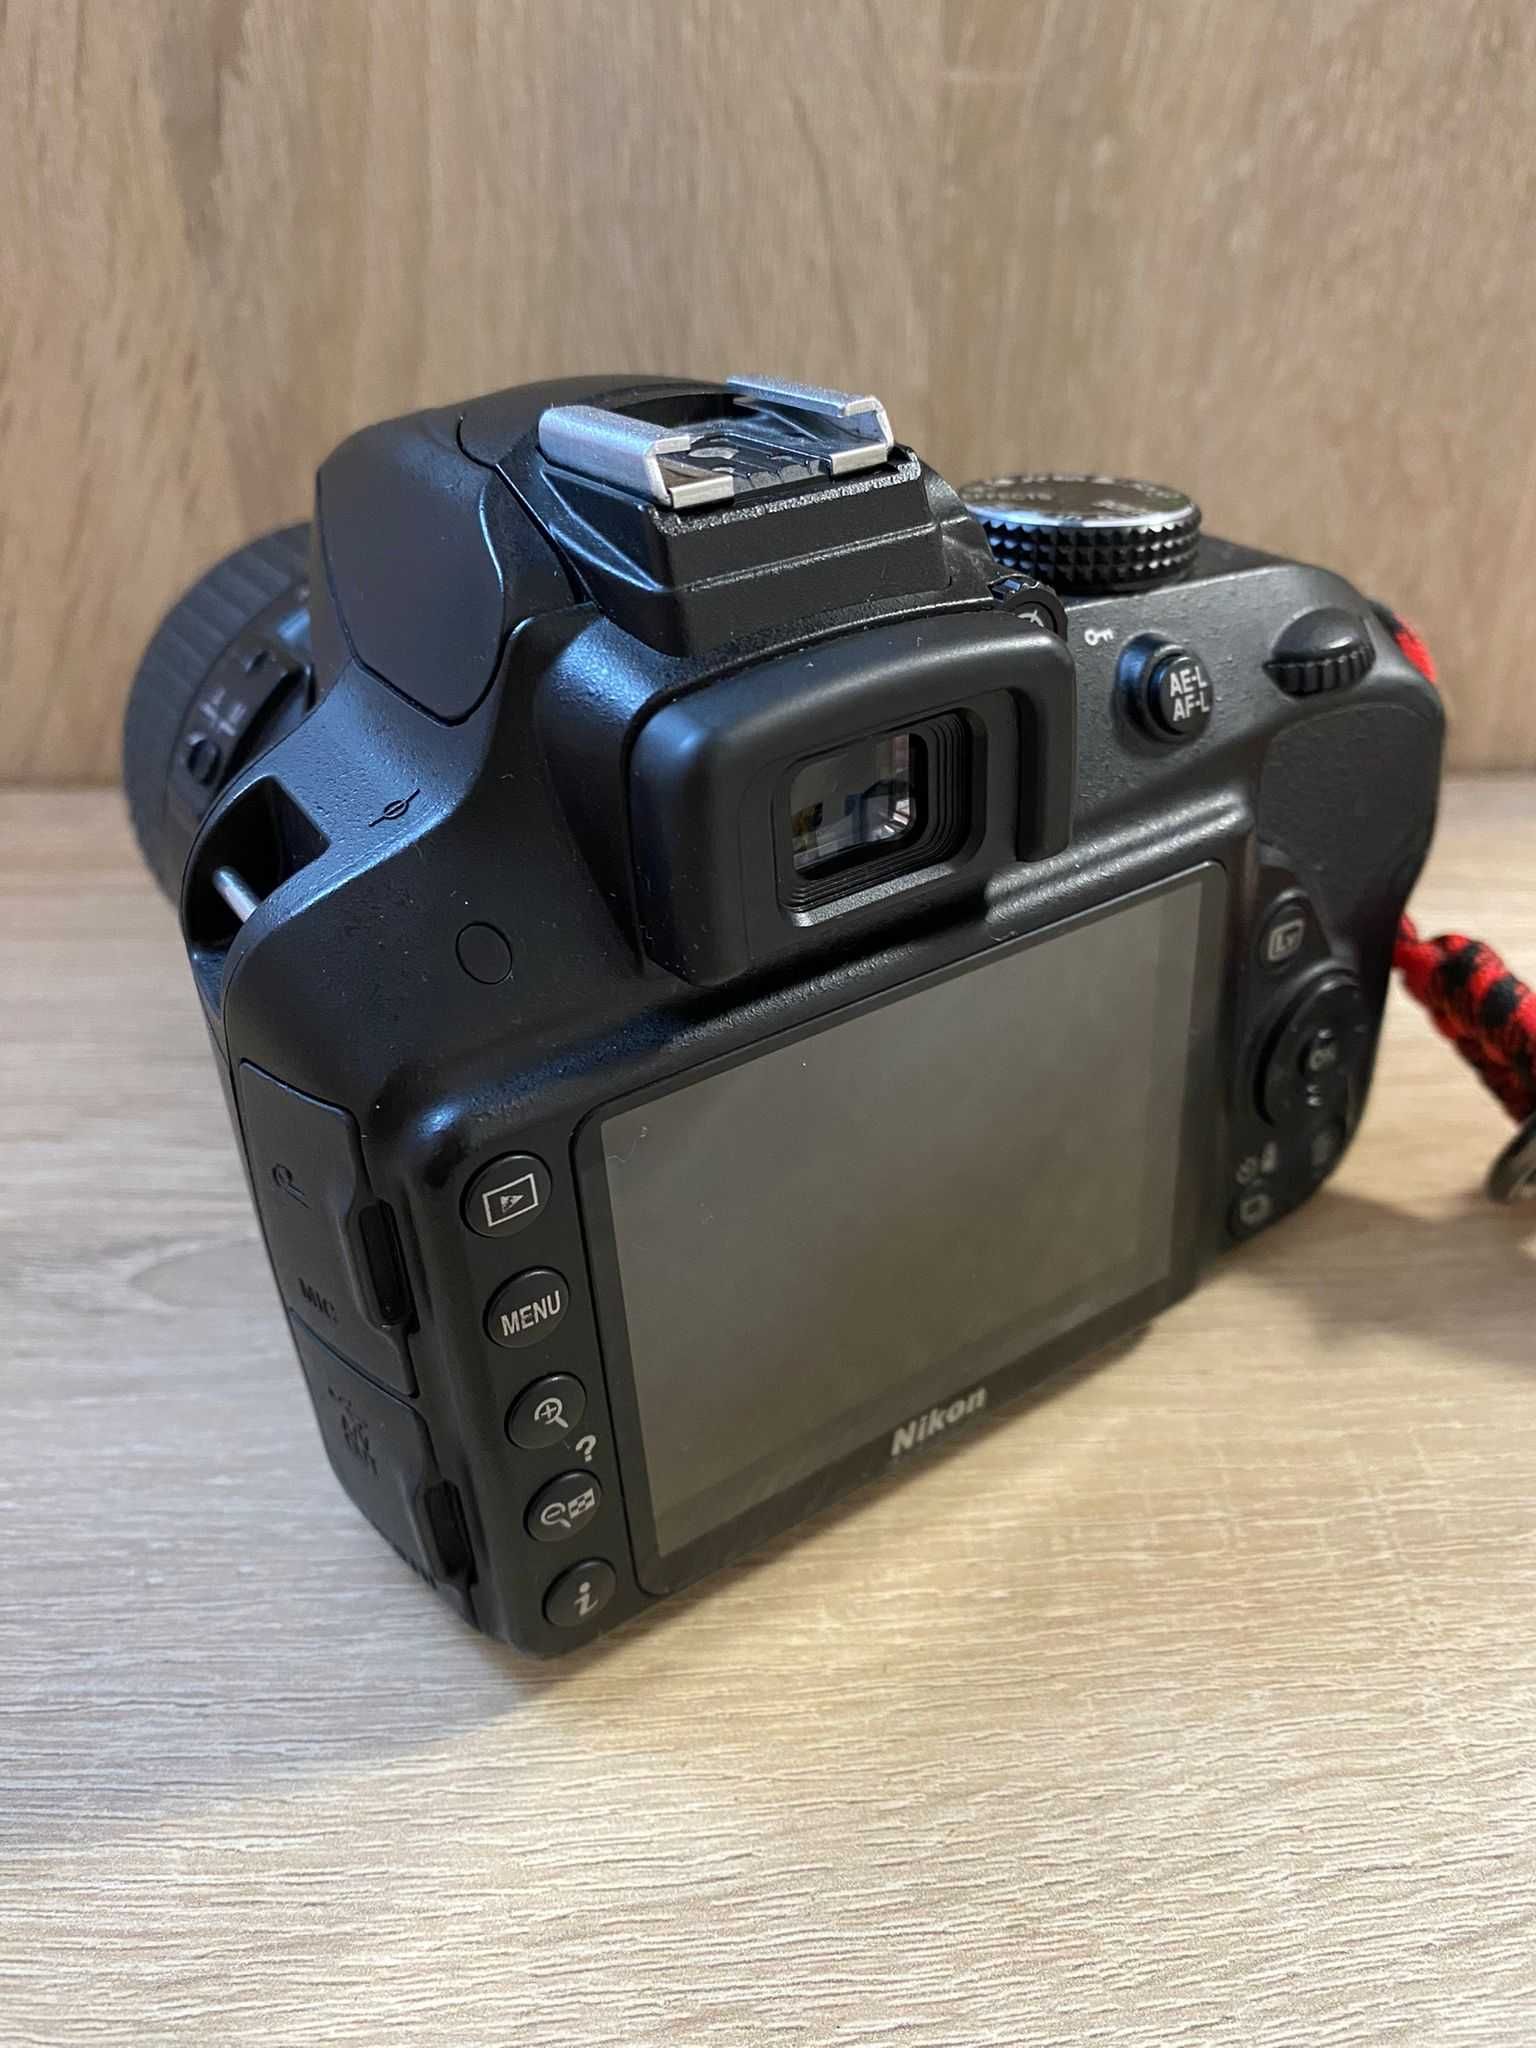 Nikon D3300 + Nikon AF-S DX Zoom-Nikkor 18-55mm f/3.5-5.6G ED II